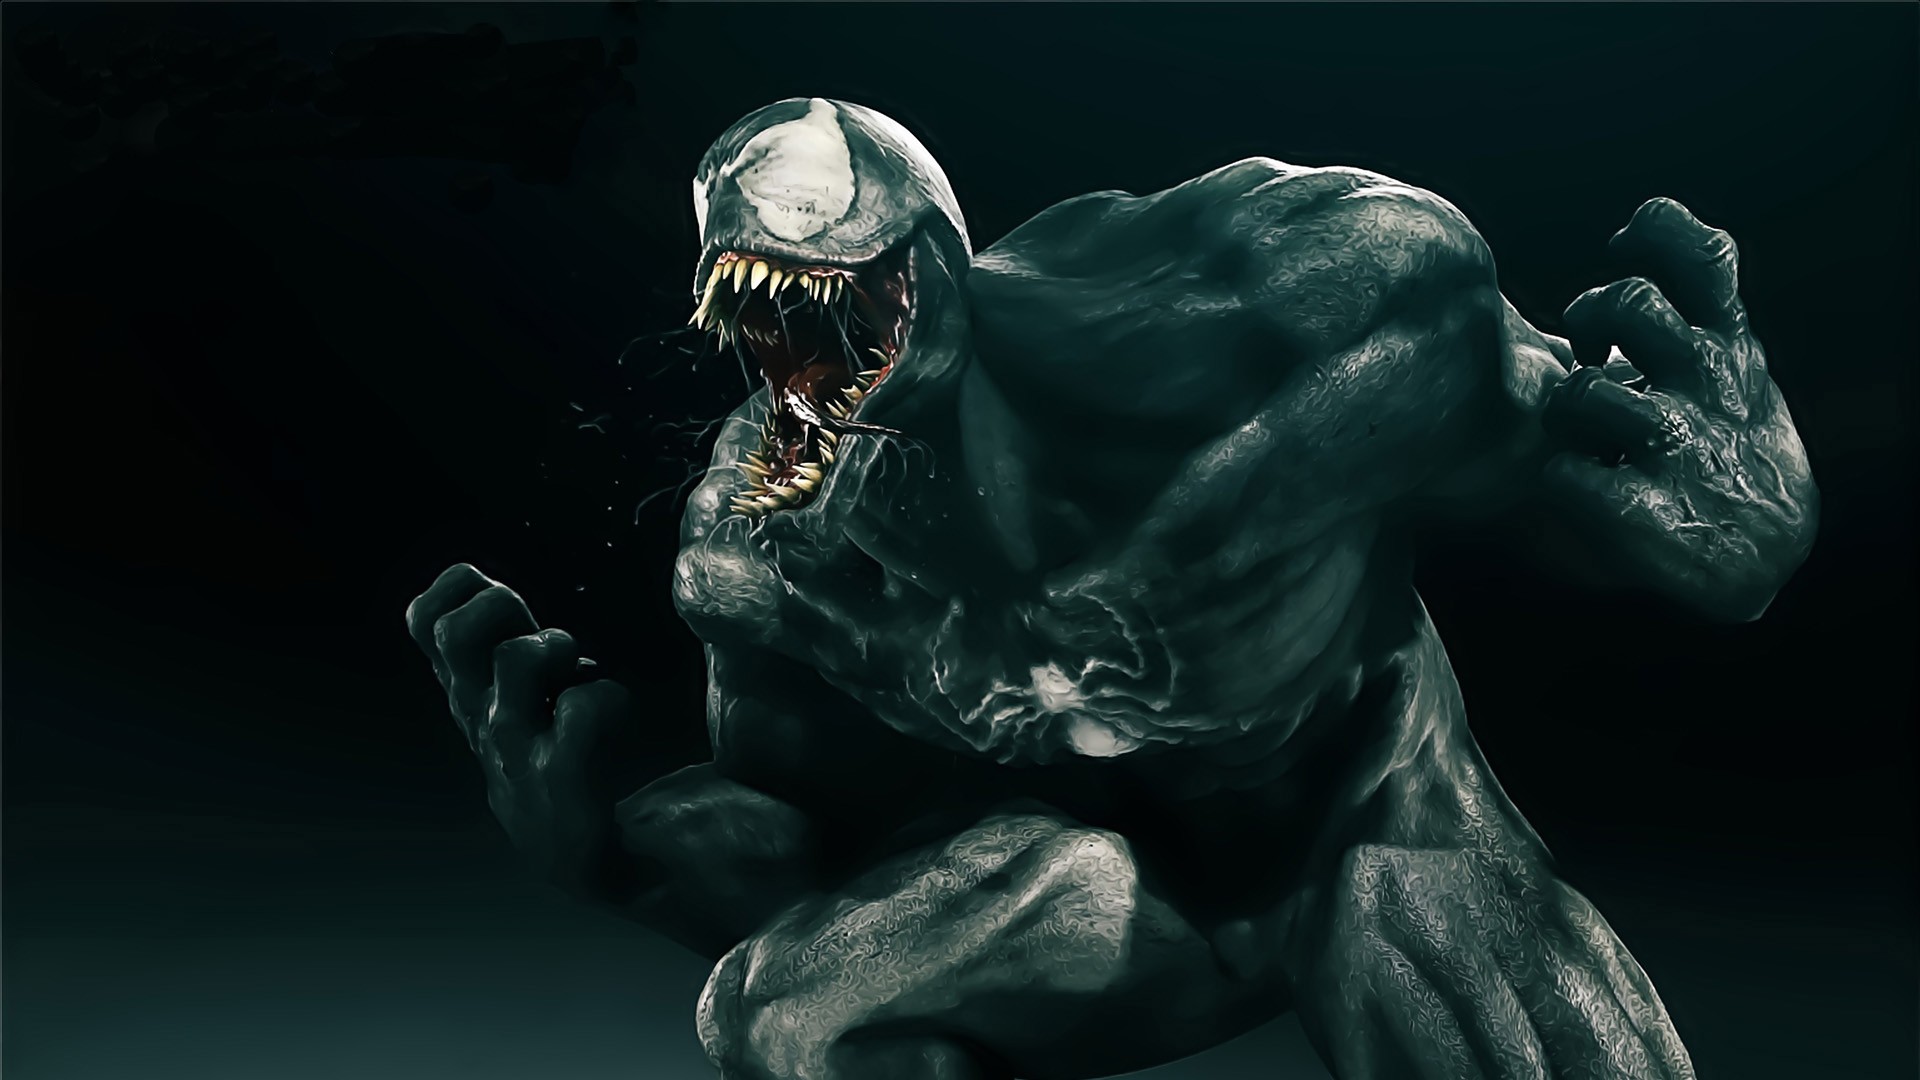 Venom Comics Creature Render Digital Art 19x1080 Wallpaper Wallhaven Cc